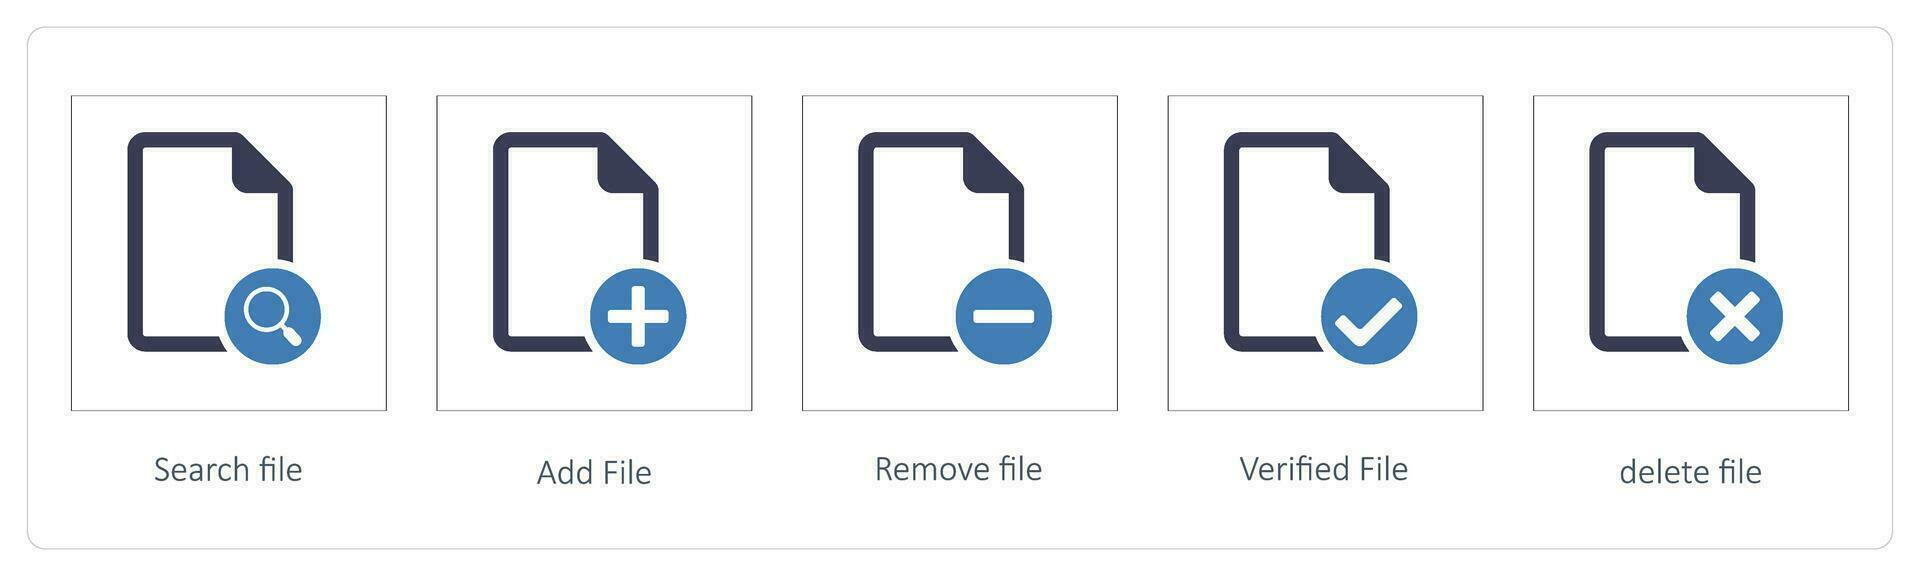 buscar archivo, añadir archivo, eliminar archivo vector